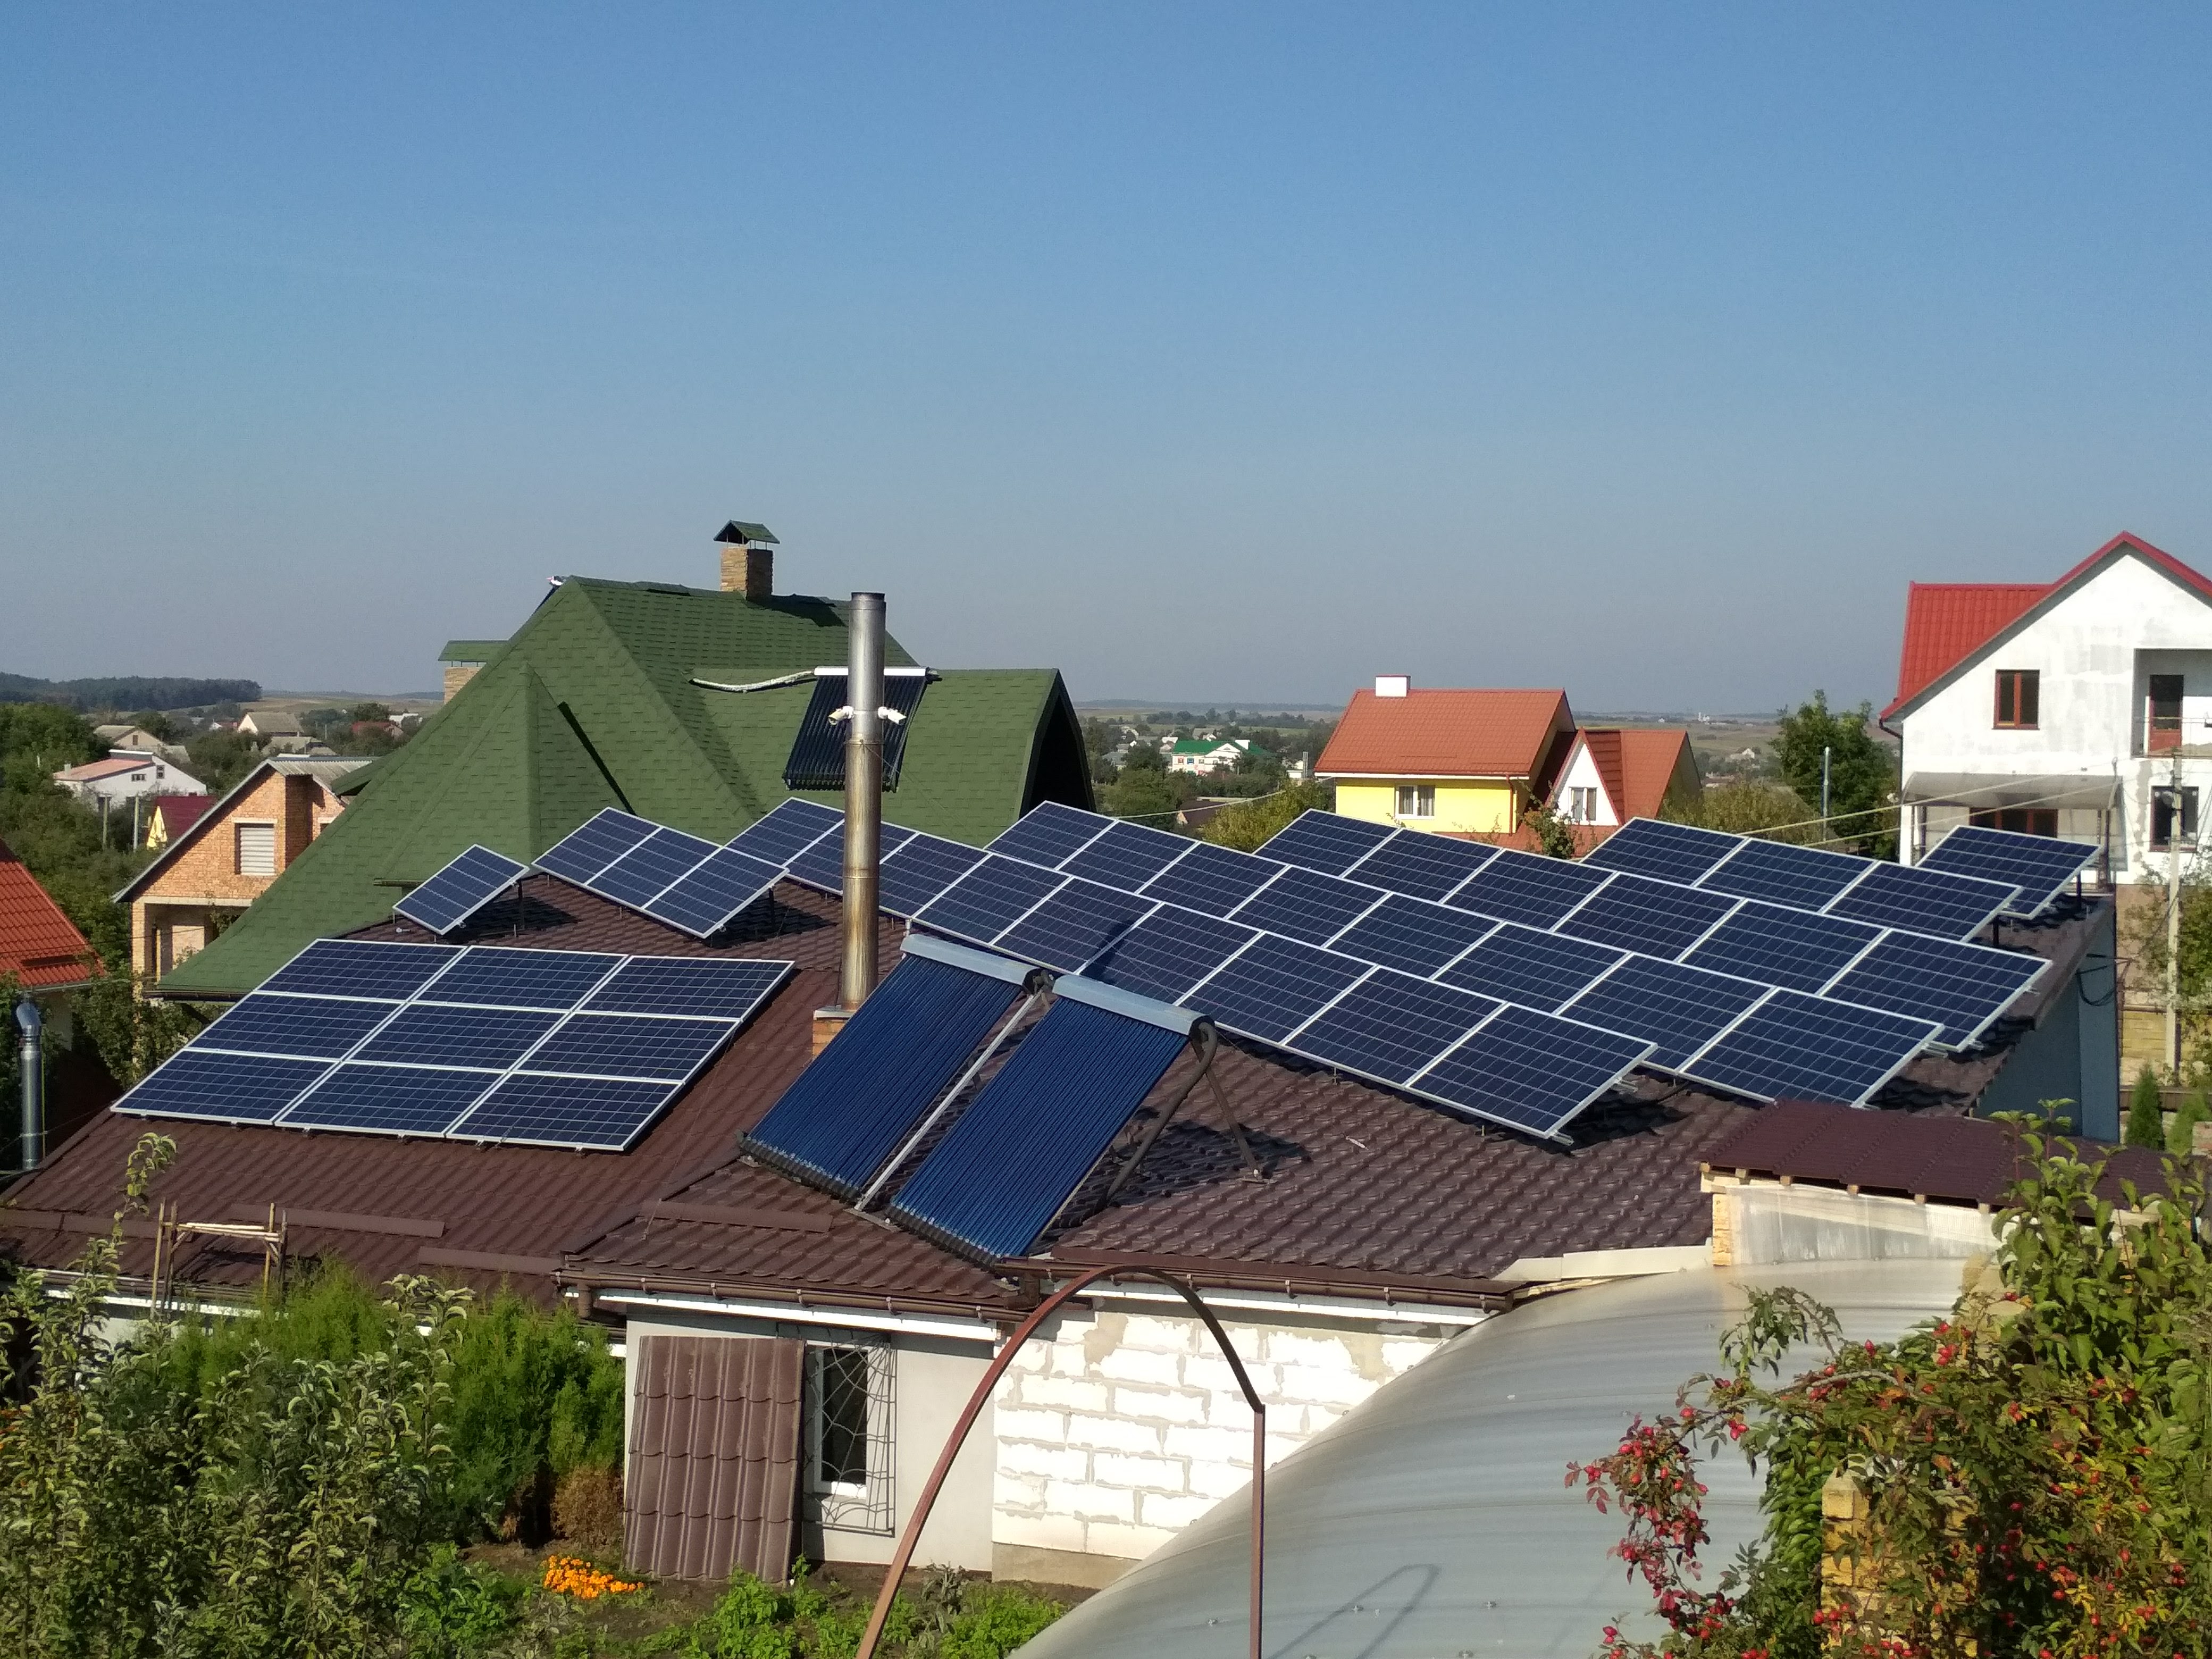 Більше 1500 домогосподарств встановили сонячні станції з початку року